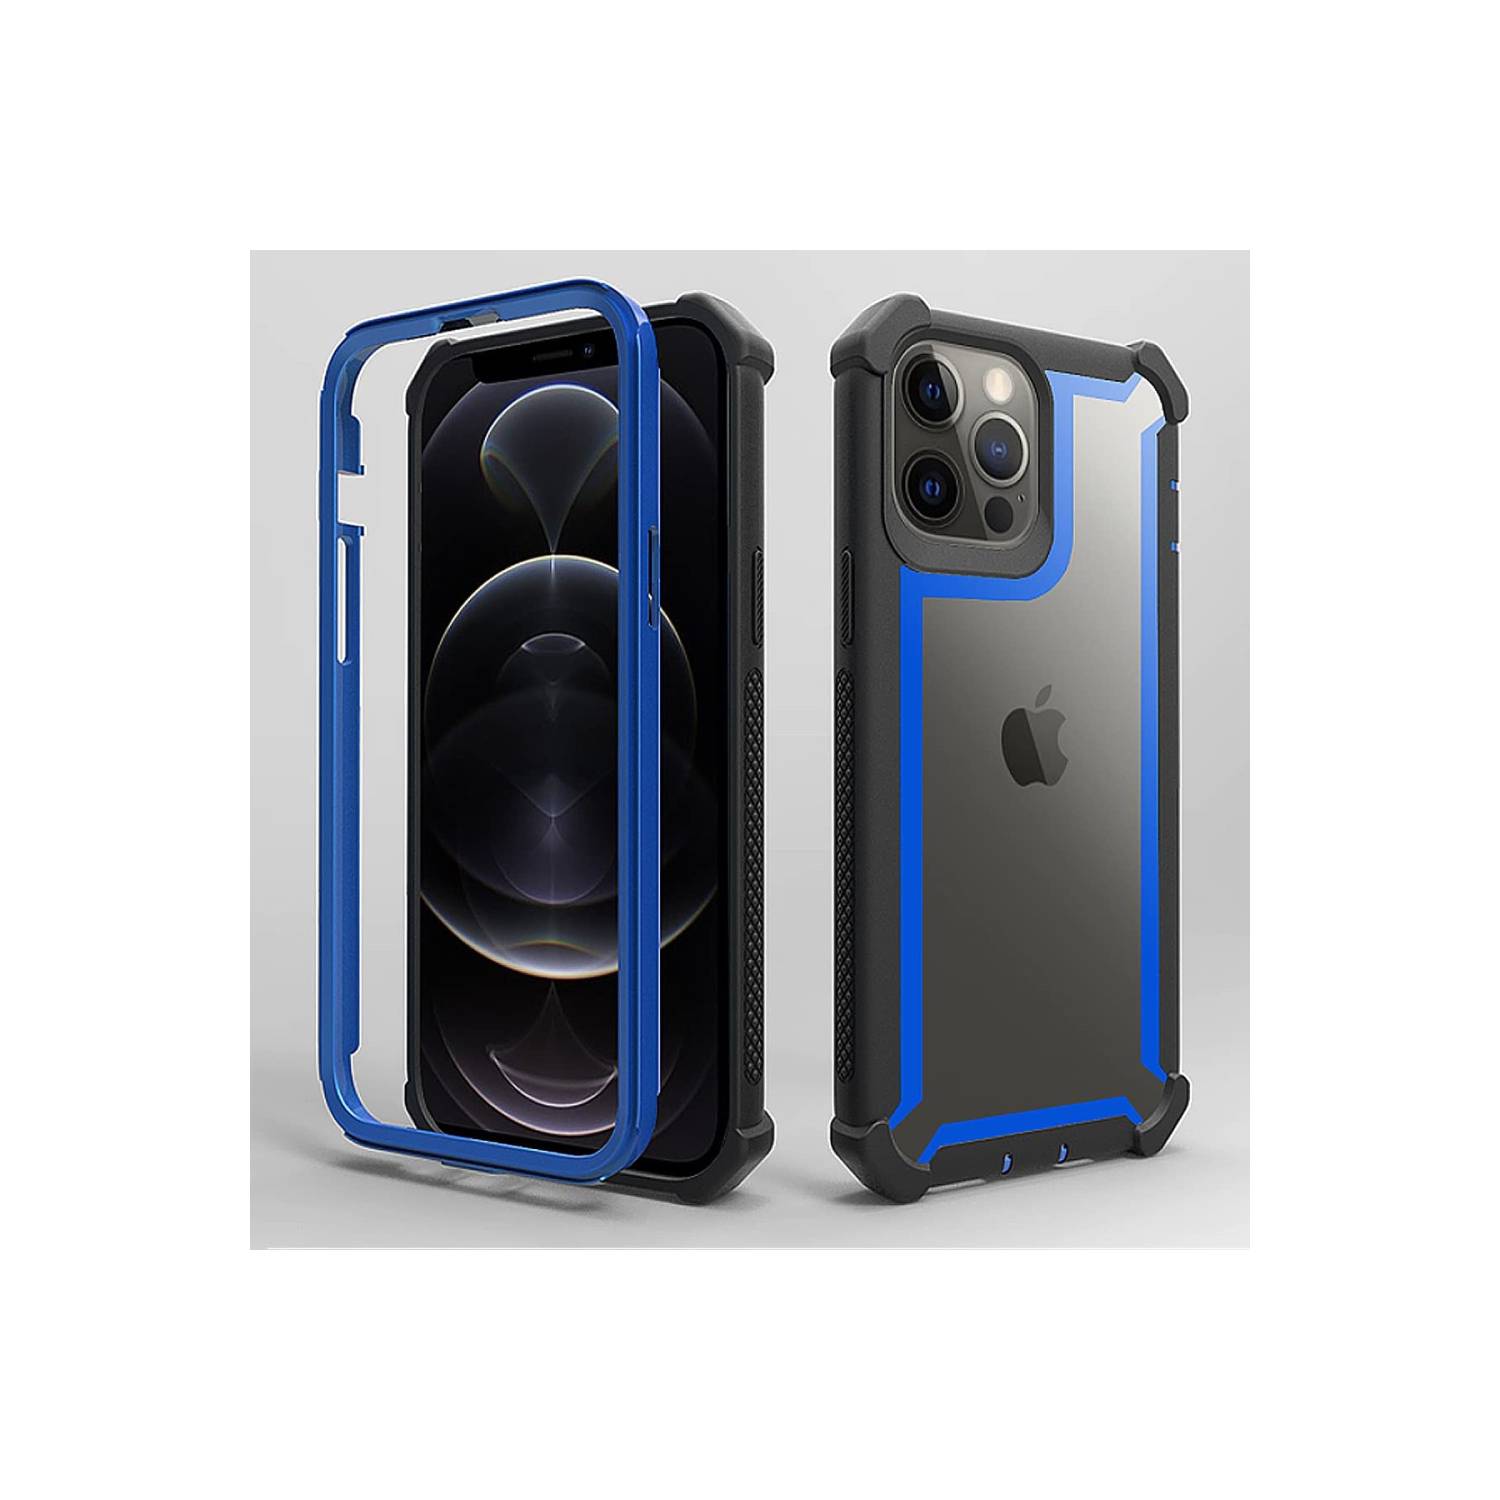 Funda Cover para Iphone X en TPU Flexible y Reforzado - Azul, oferta LOi.